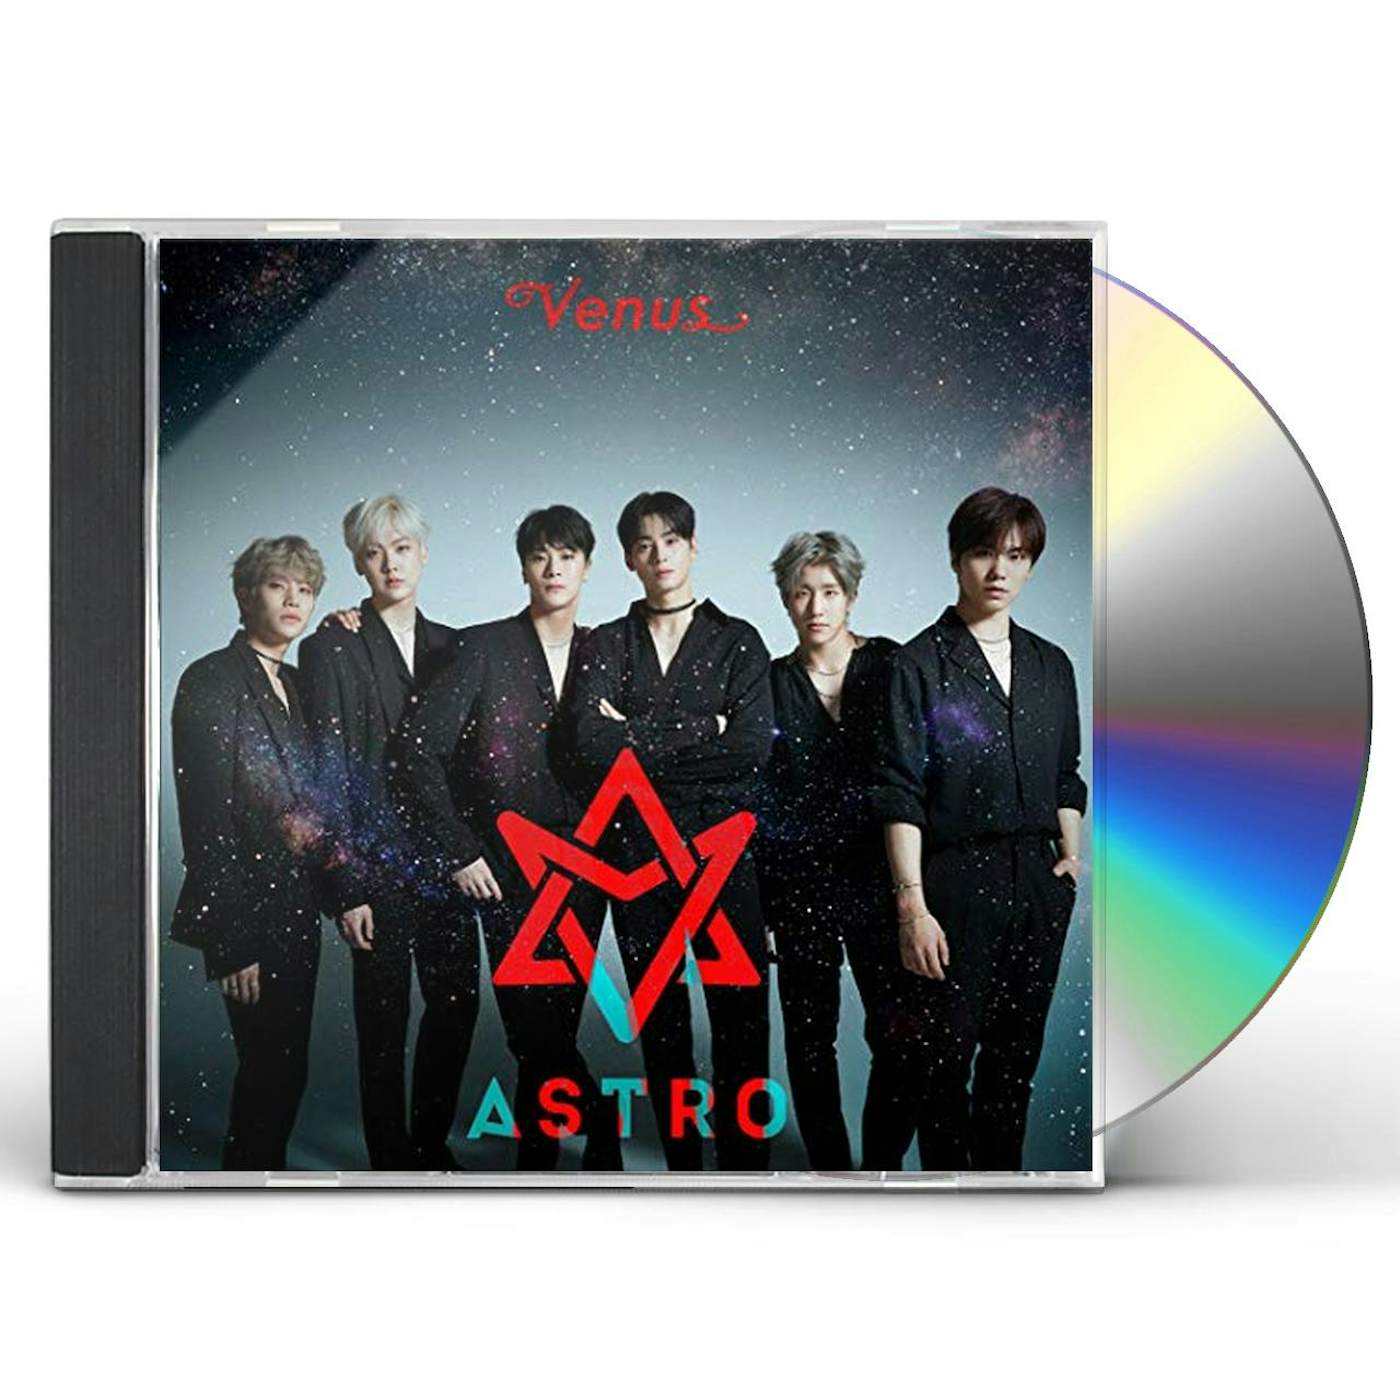 ASTRO VENUS (VERSION A) CD